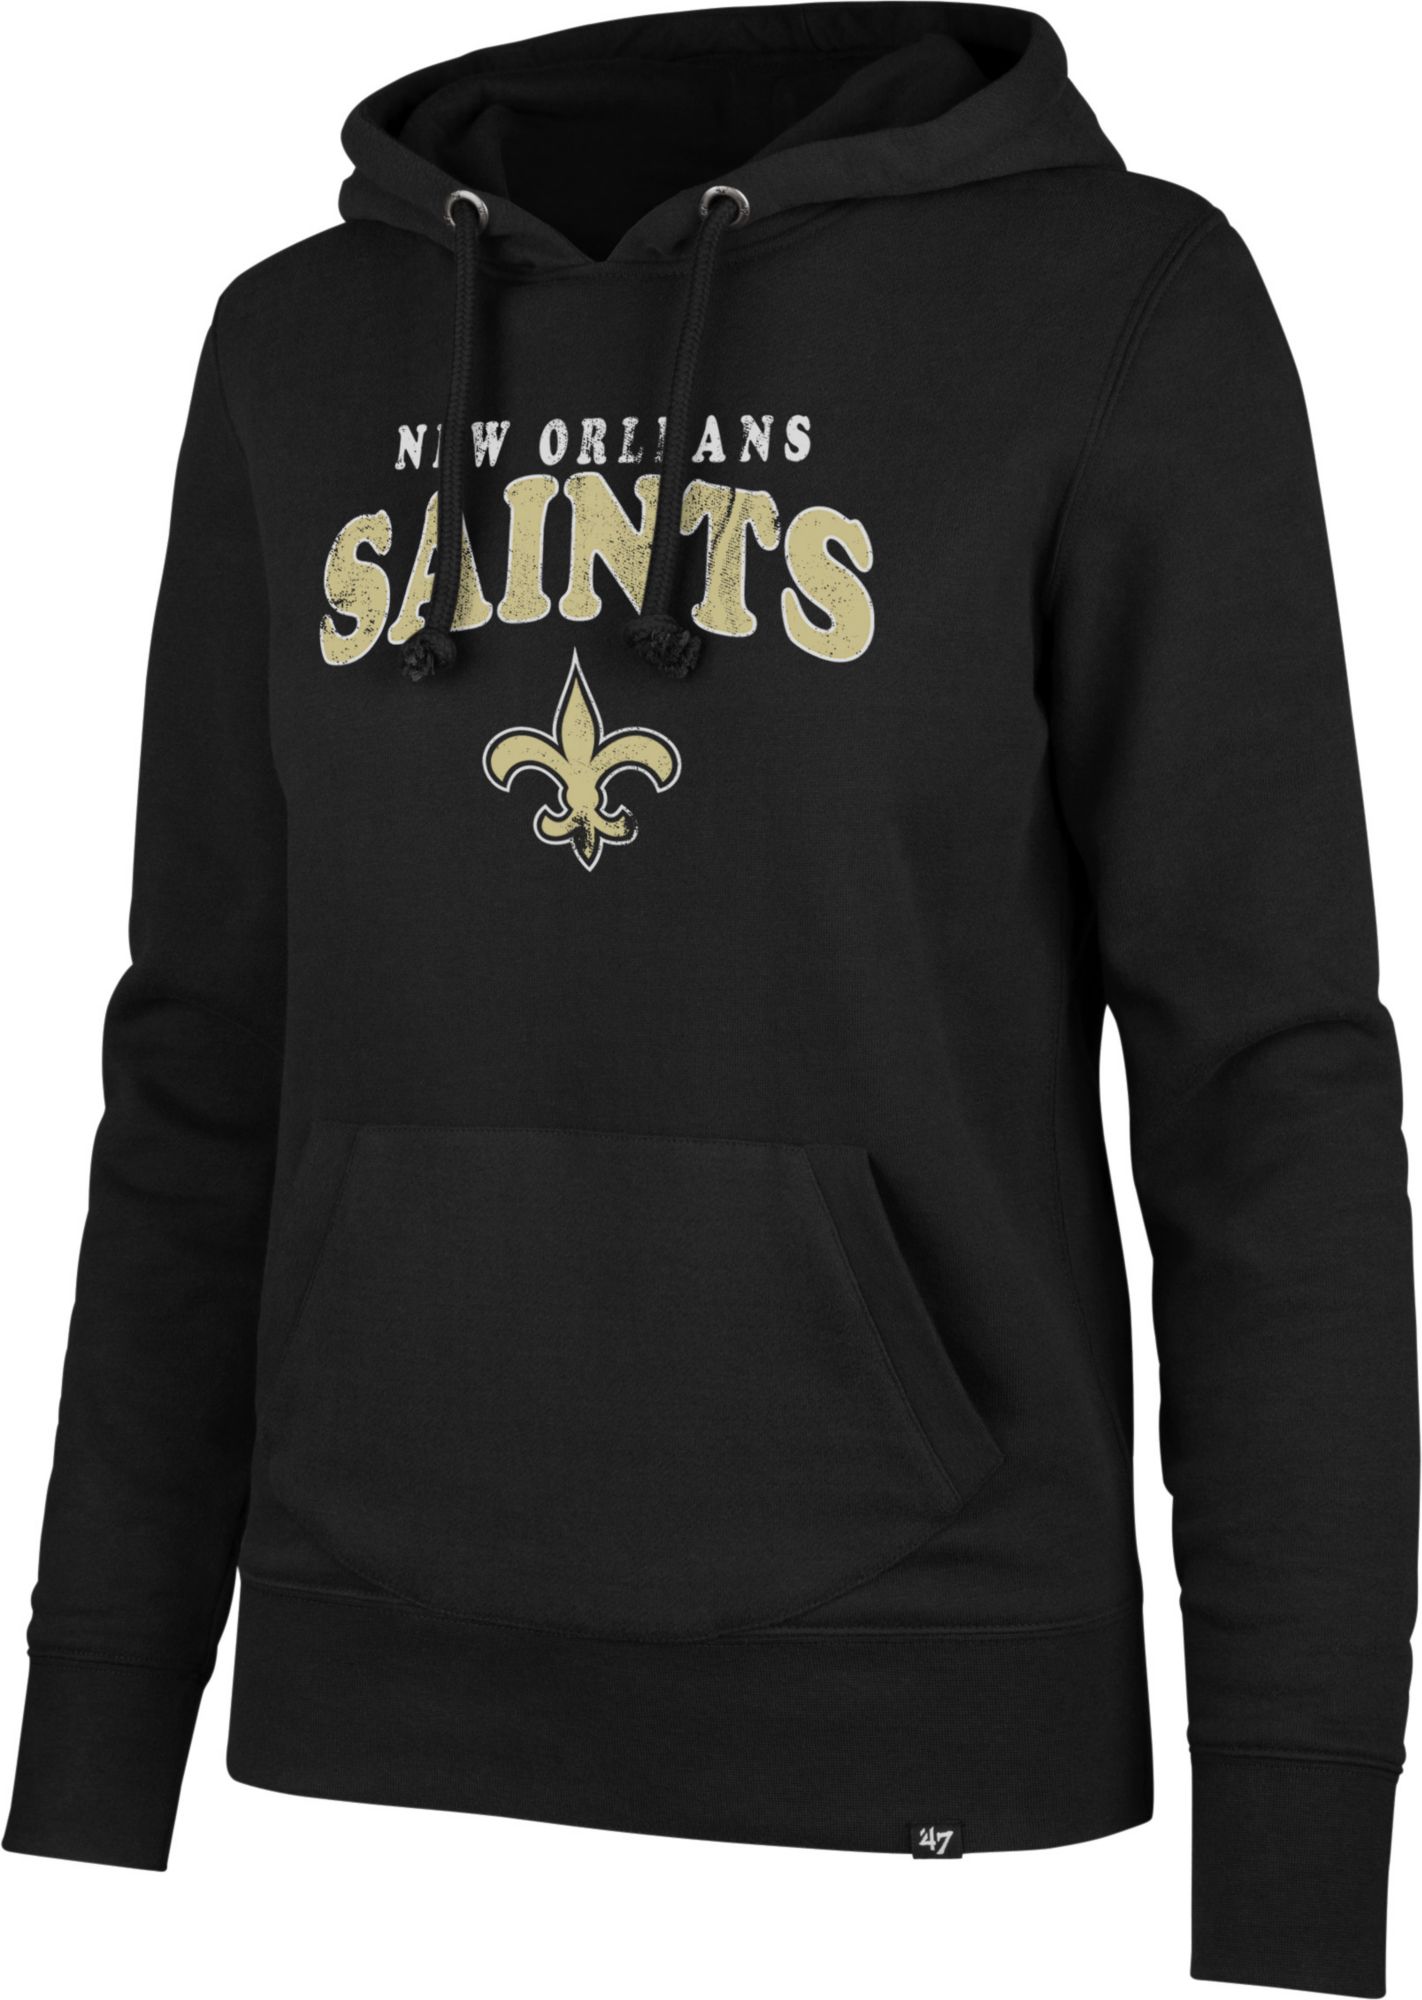 womens saints hoodie